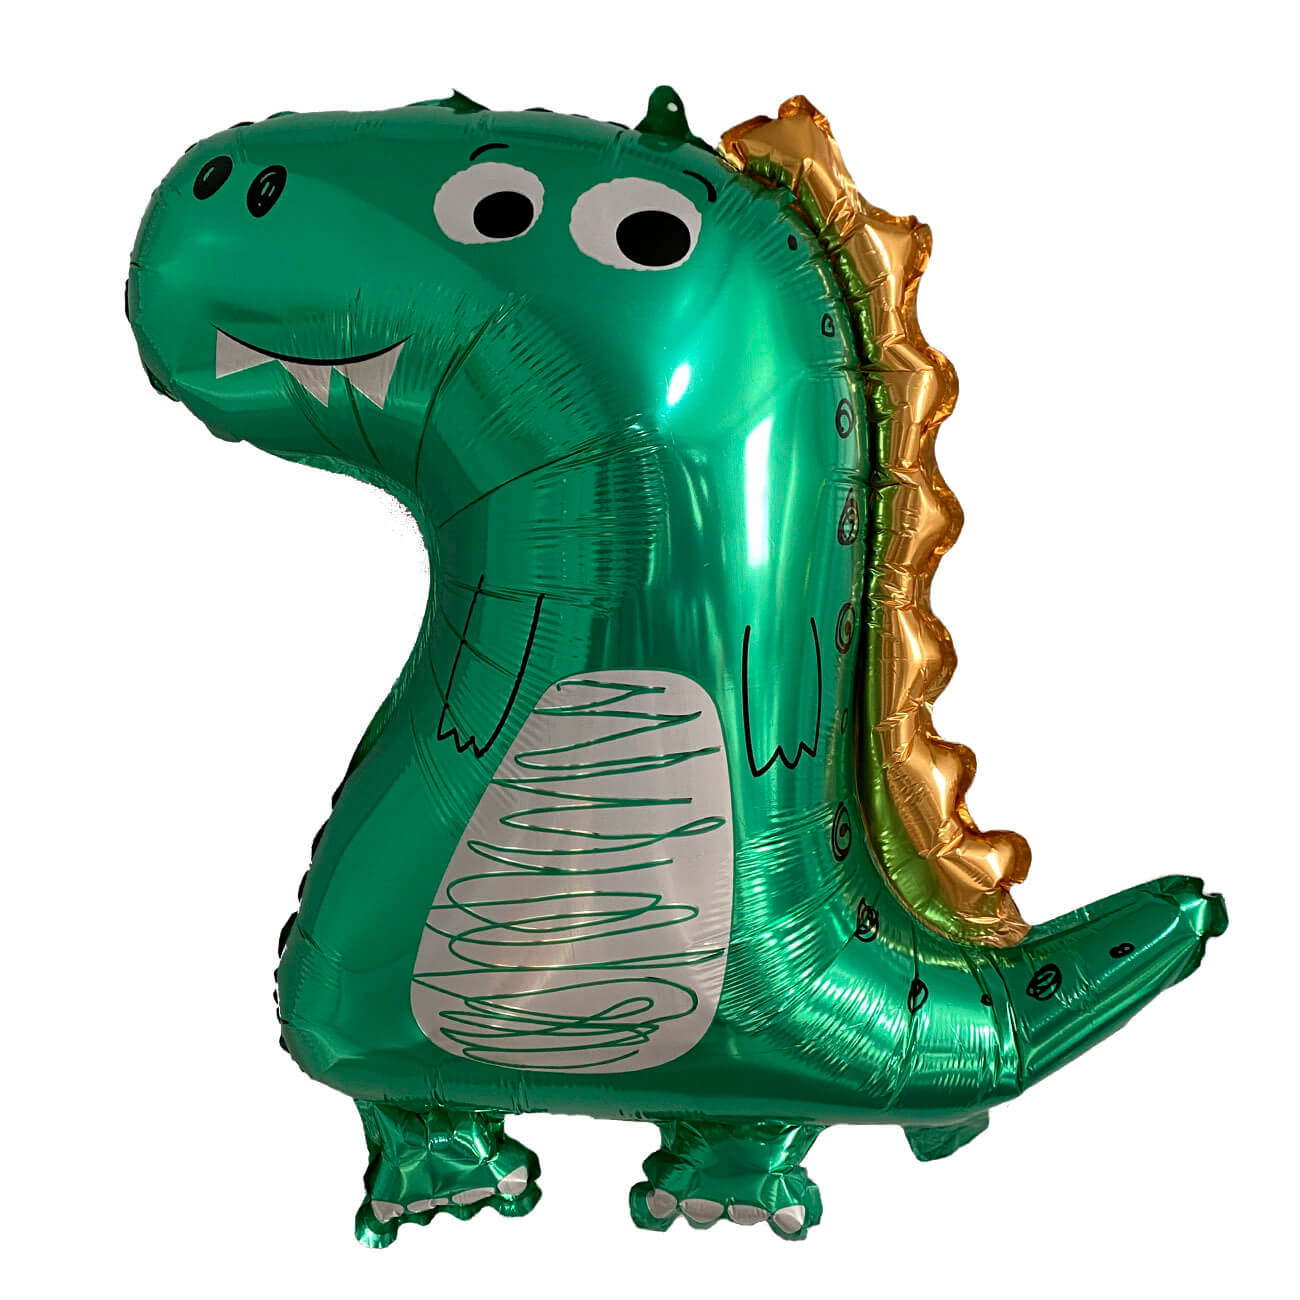 Шар воздушный, 70х59 см, фольга, зеленый, Динозавр, Dino шар воздушный 12